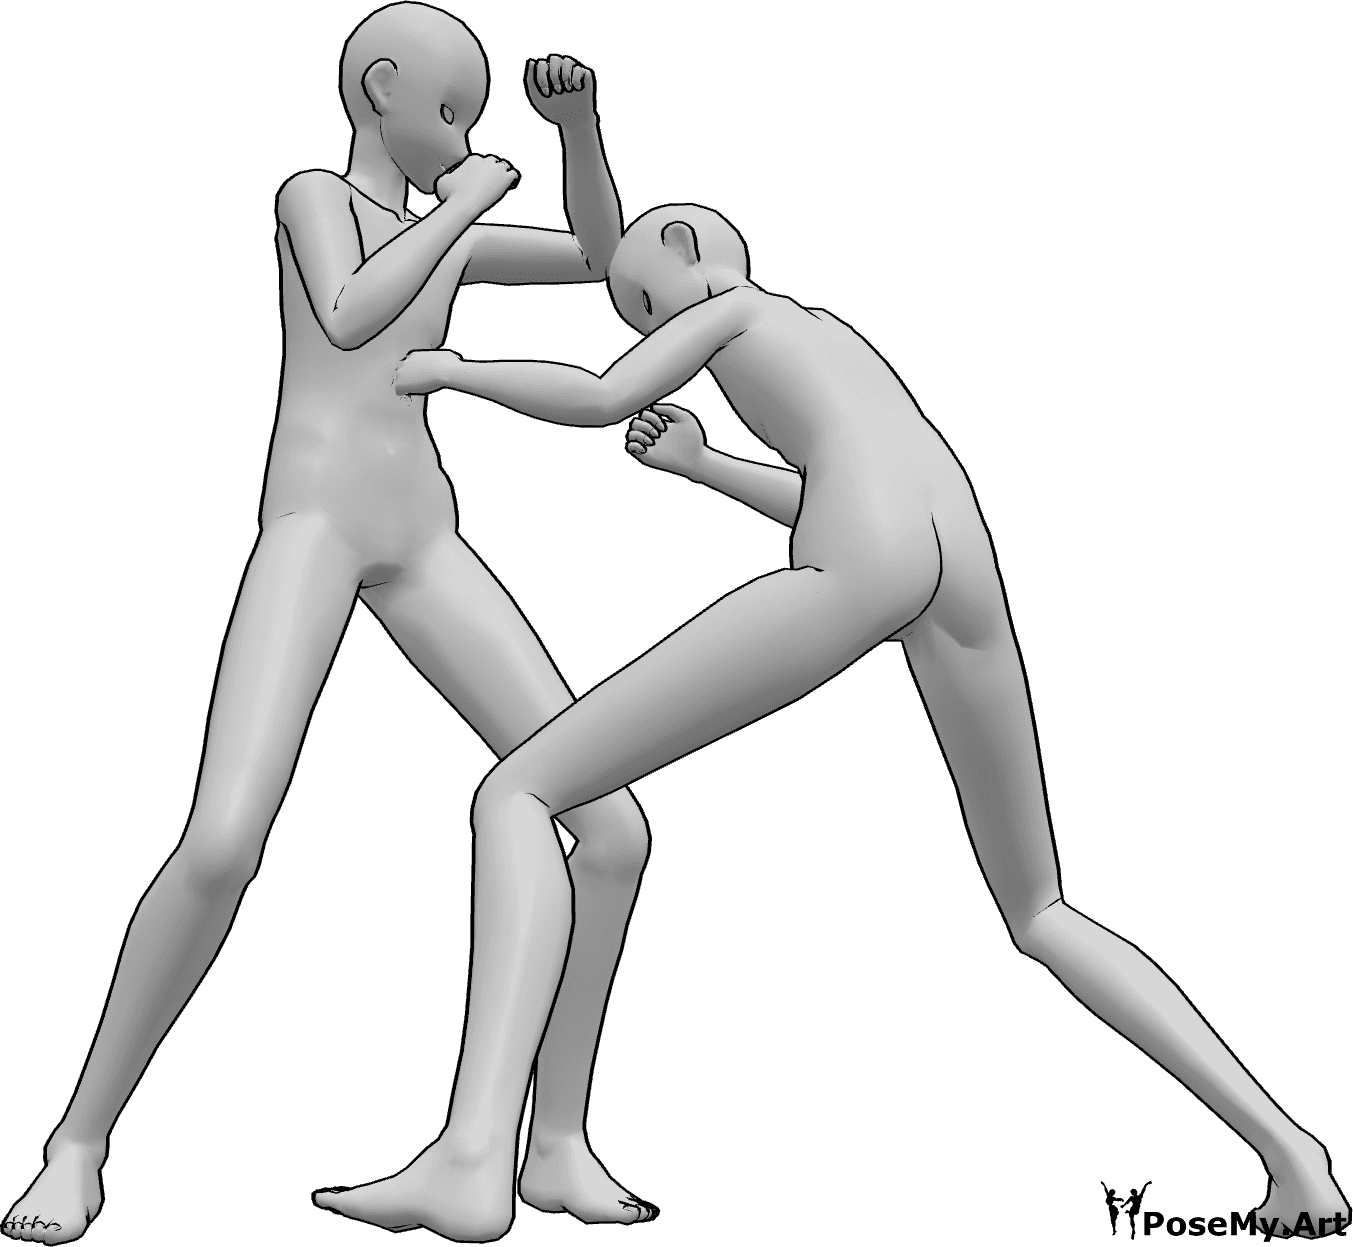 Posen-Referenz- Anime männlichen Kampf Pose - Zwei Anime-Männer kämpfen, schlagen, schlagen sich gegenseitig, Anime Schlacht Pose